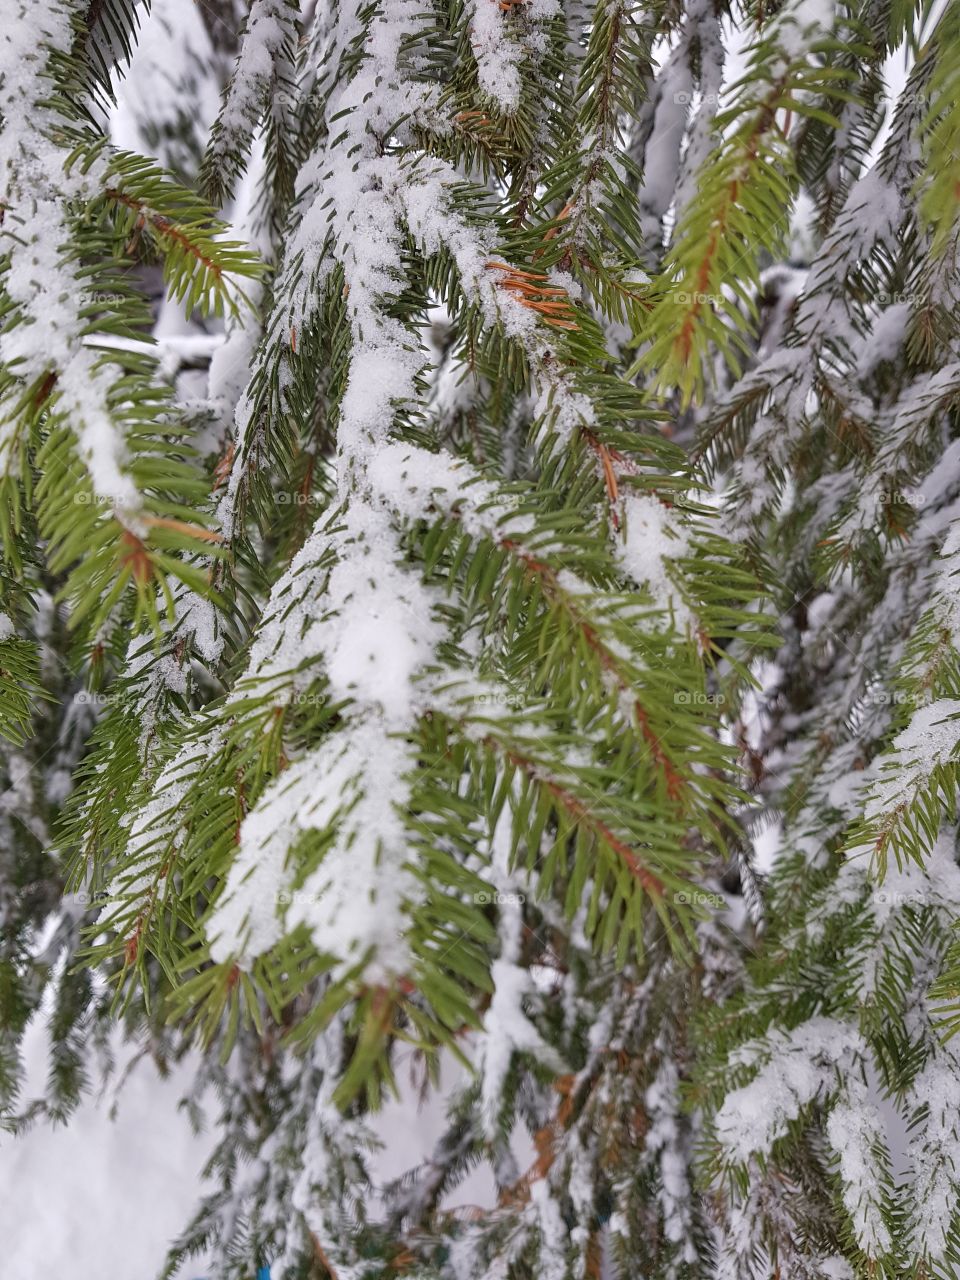 snow tree